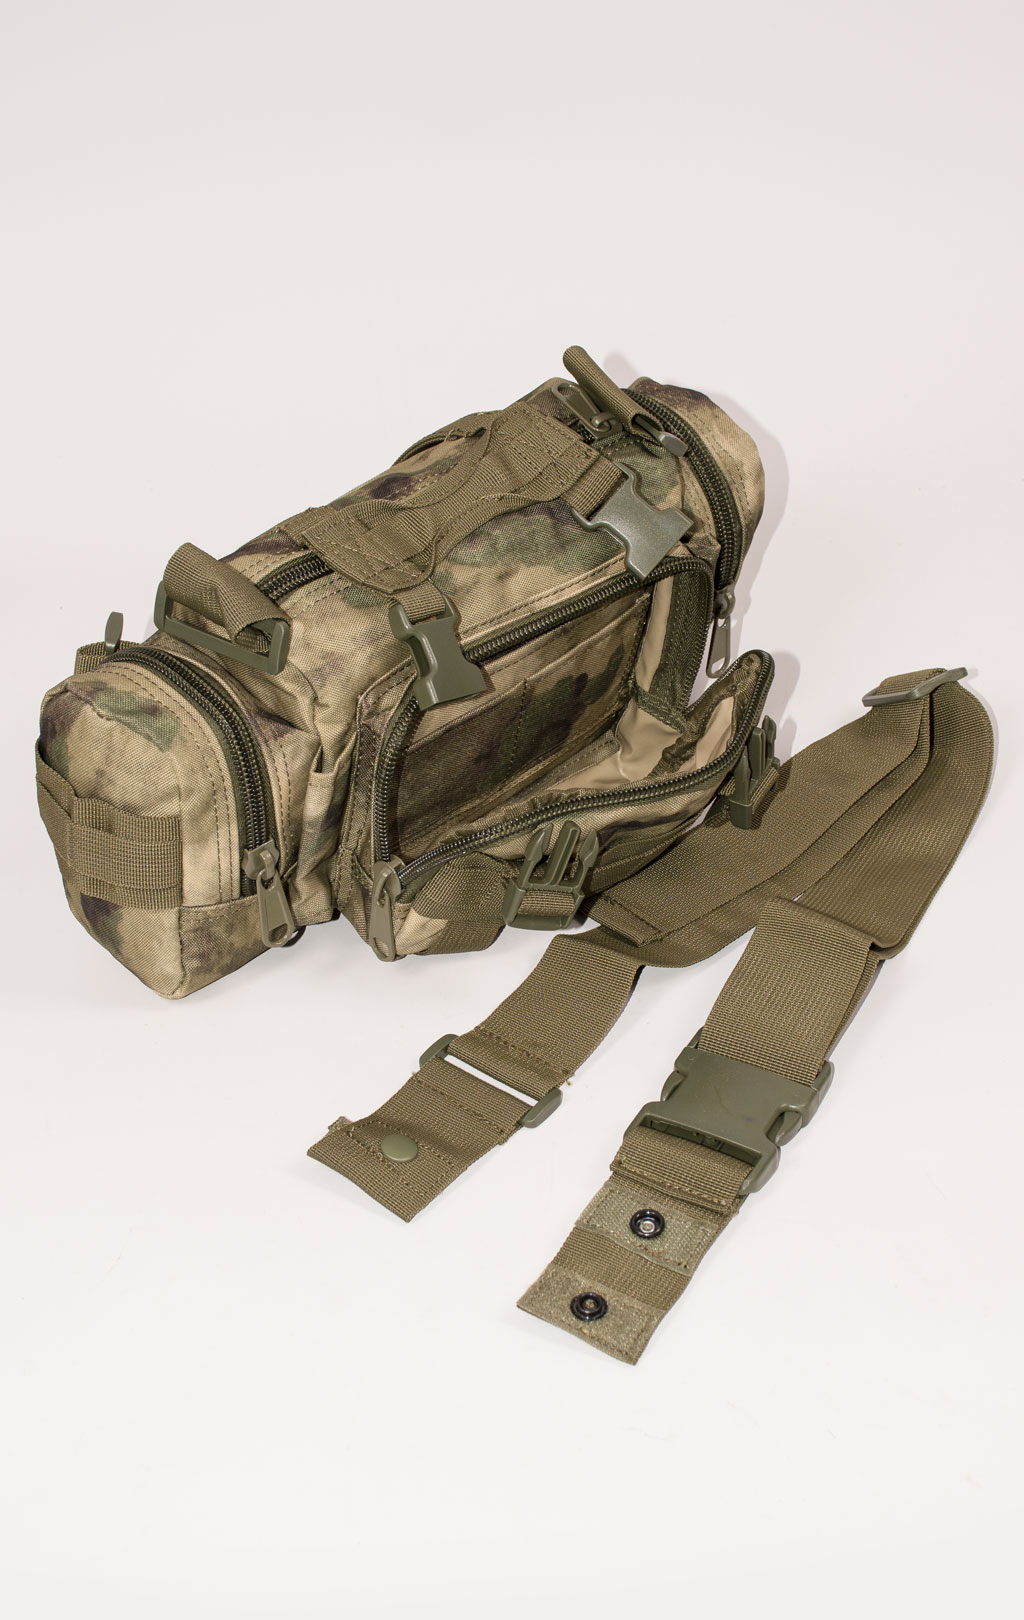 Рюкзак тактический ASSAULT 60L с поясной сумкой + 2 подсумка green camo BS-016 Китай